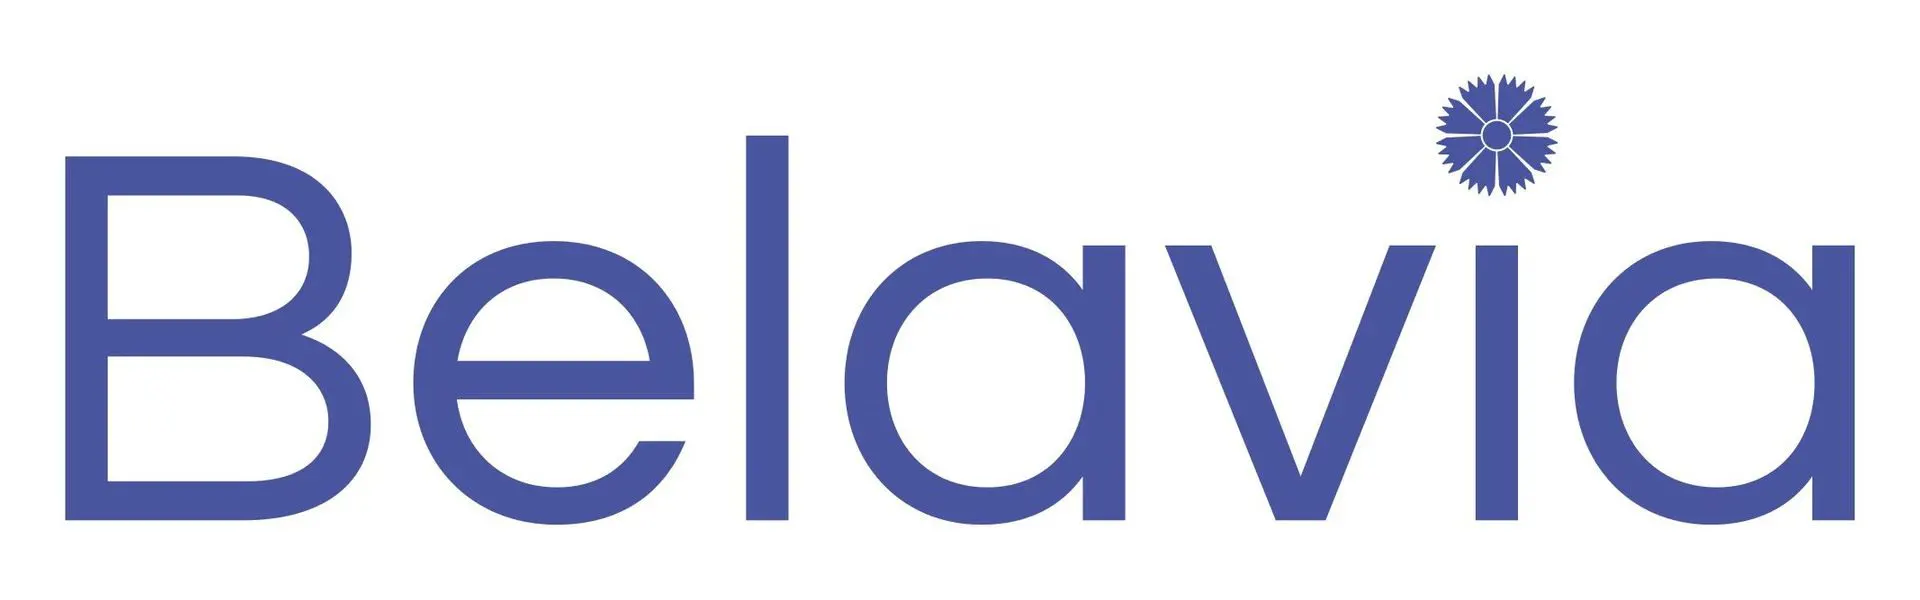 Белавиа - belavia - abcdef.wiki